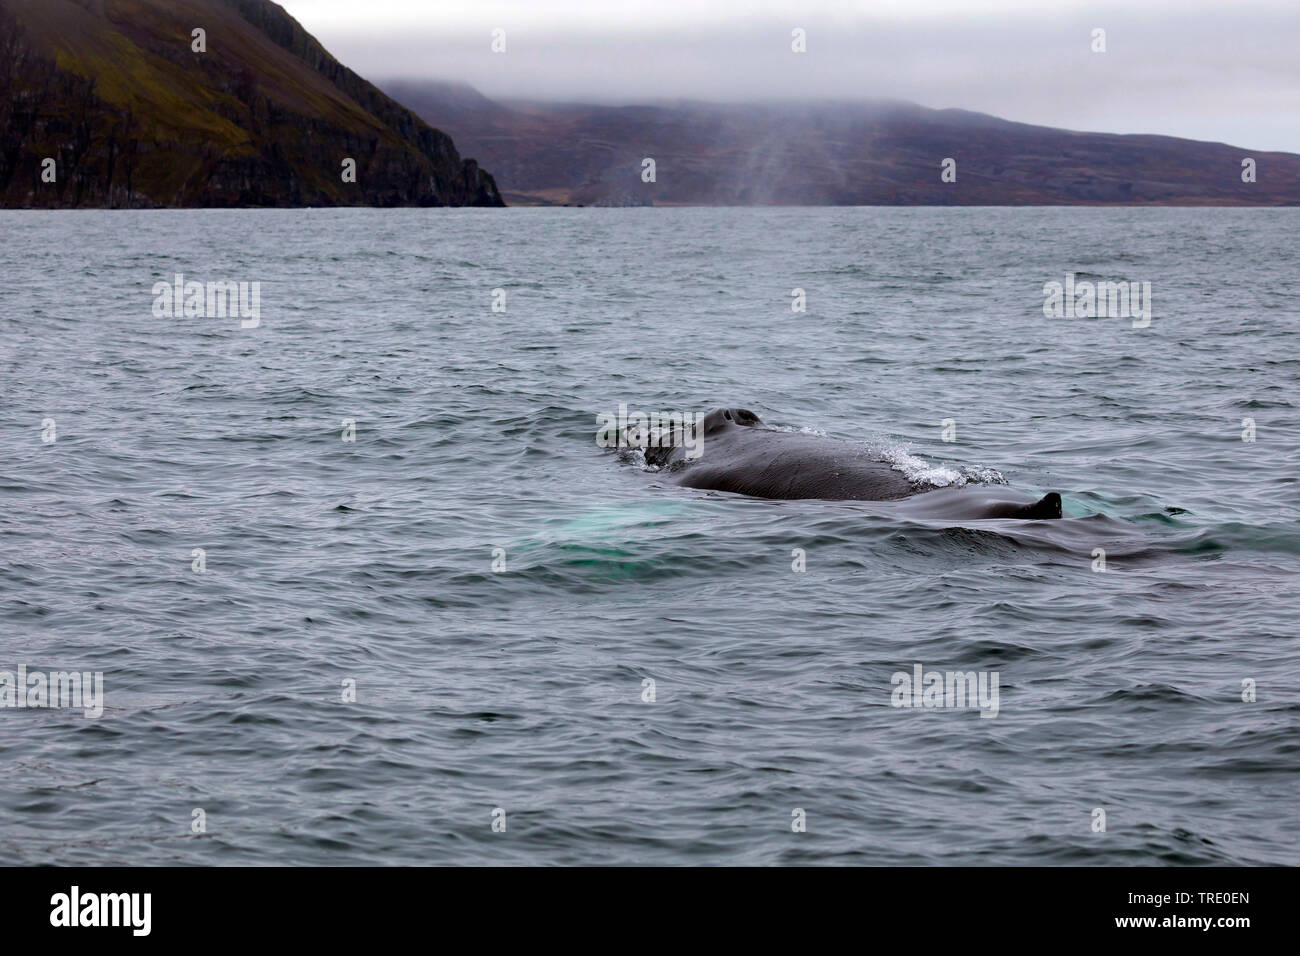 La ballena jorobada (Megaptera novaeangliae), nadar en la superficie del agua, Islandia Foto de stock